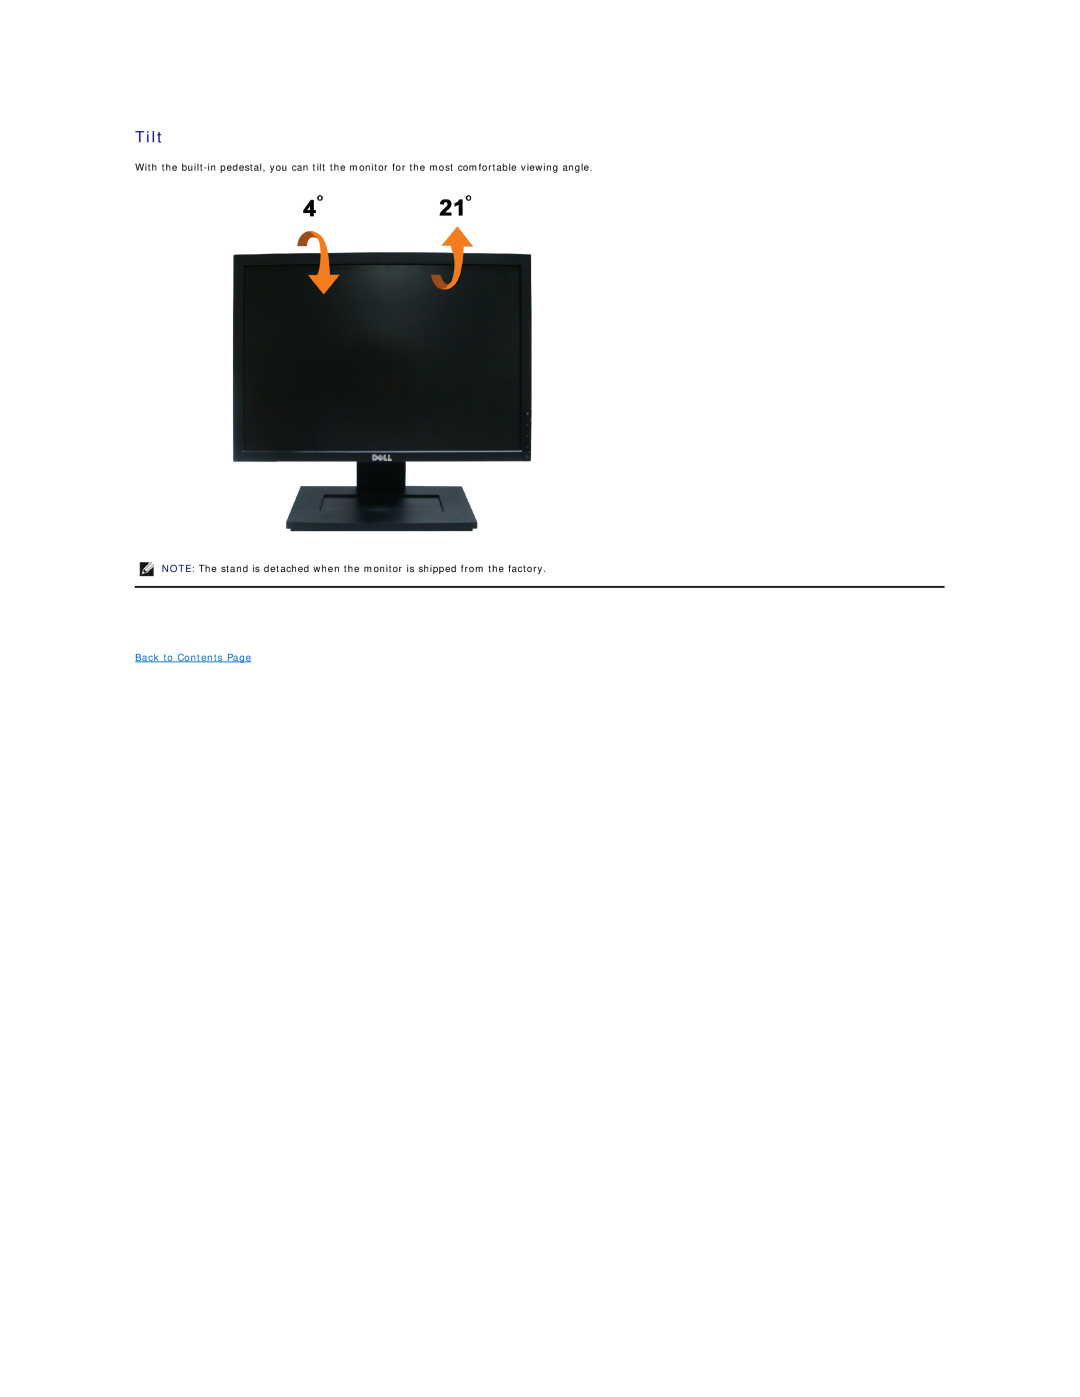 Dell E1909W appendix Tilt, Back to Contents Page 